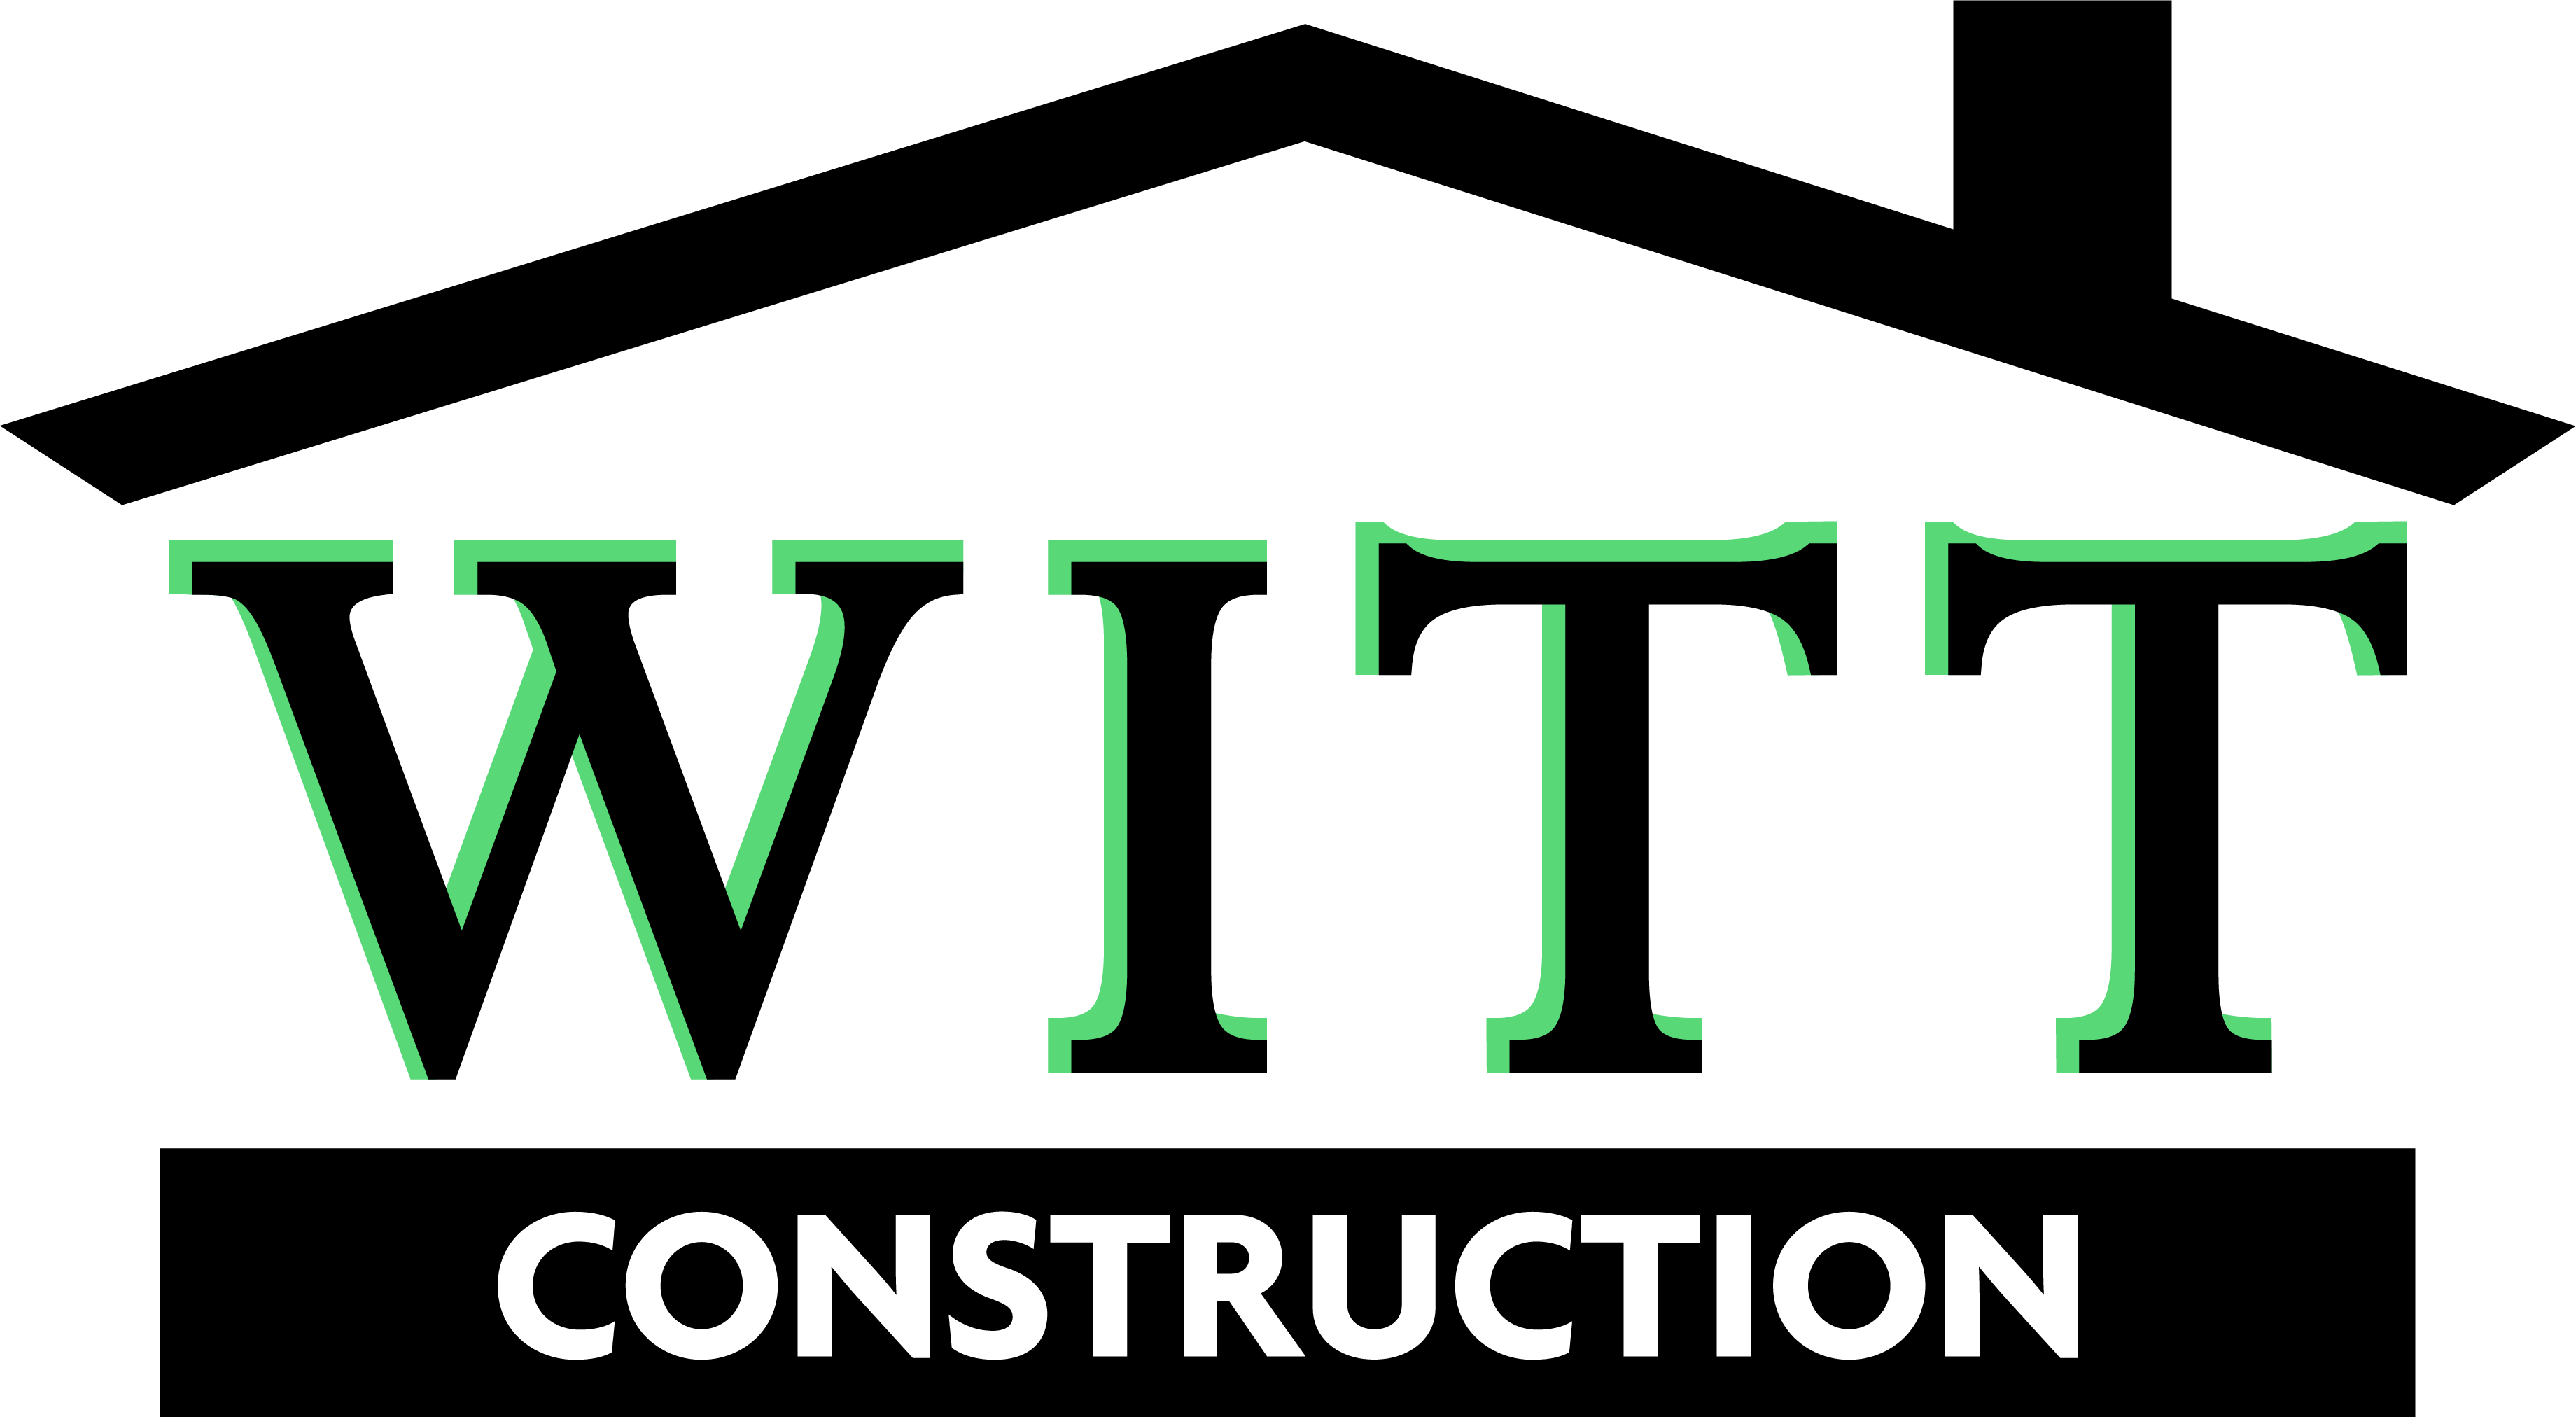 Witt Construction